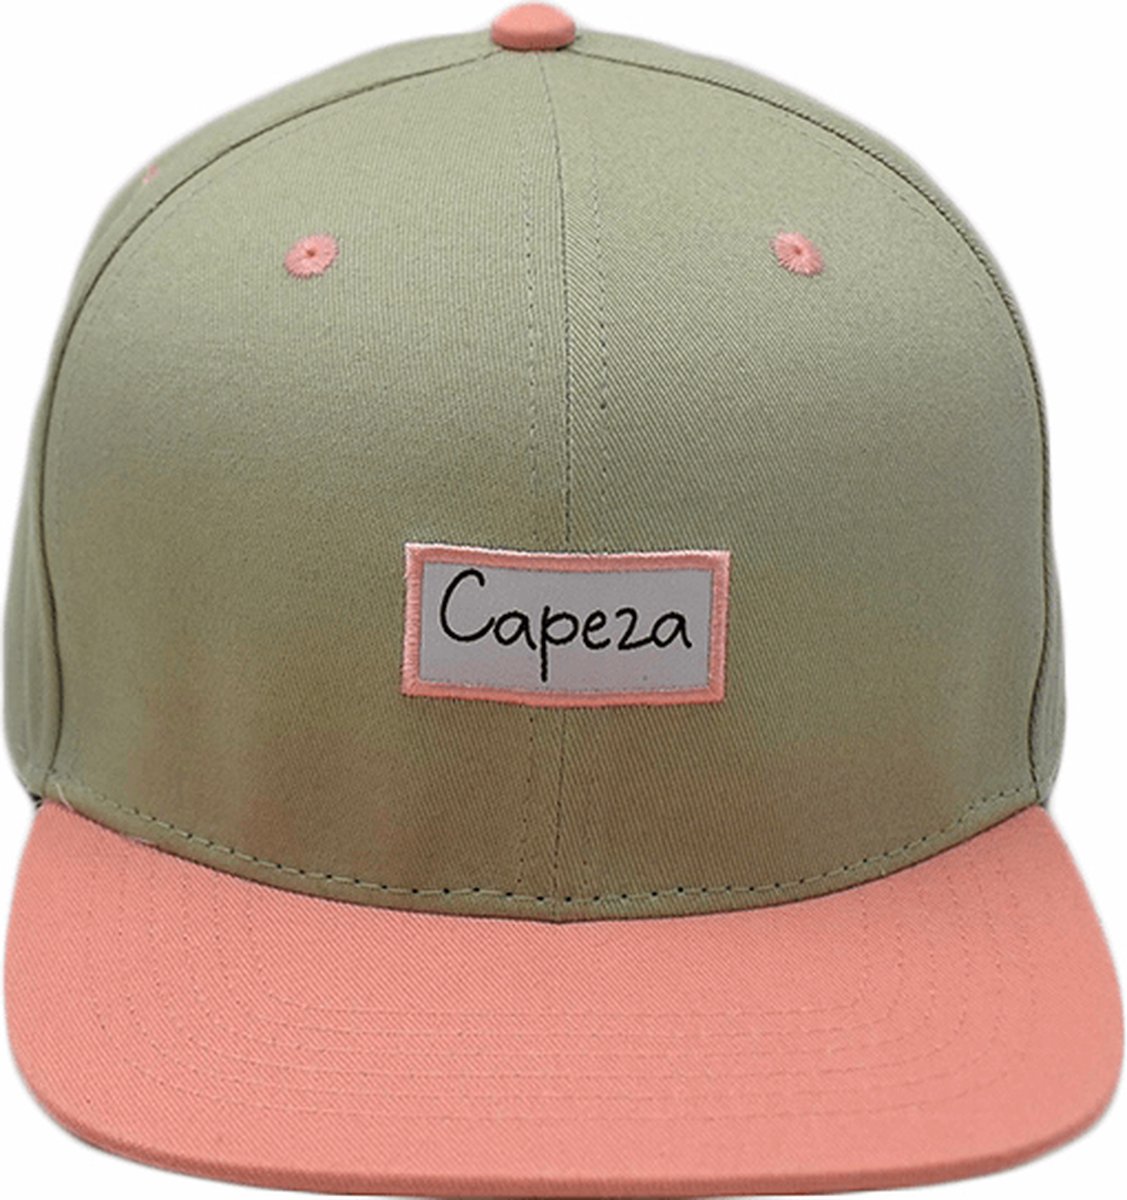 Capeza - Célestine - Kind 6 jaar en hoger - Snapback kind - Kinderpet - Zomerpet - Pet voor kinderen - snapback cap